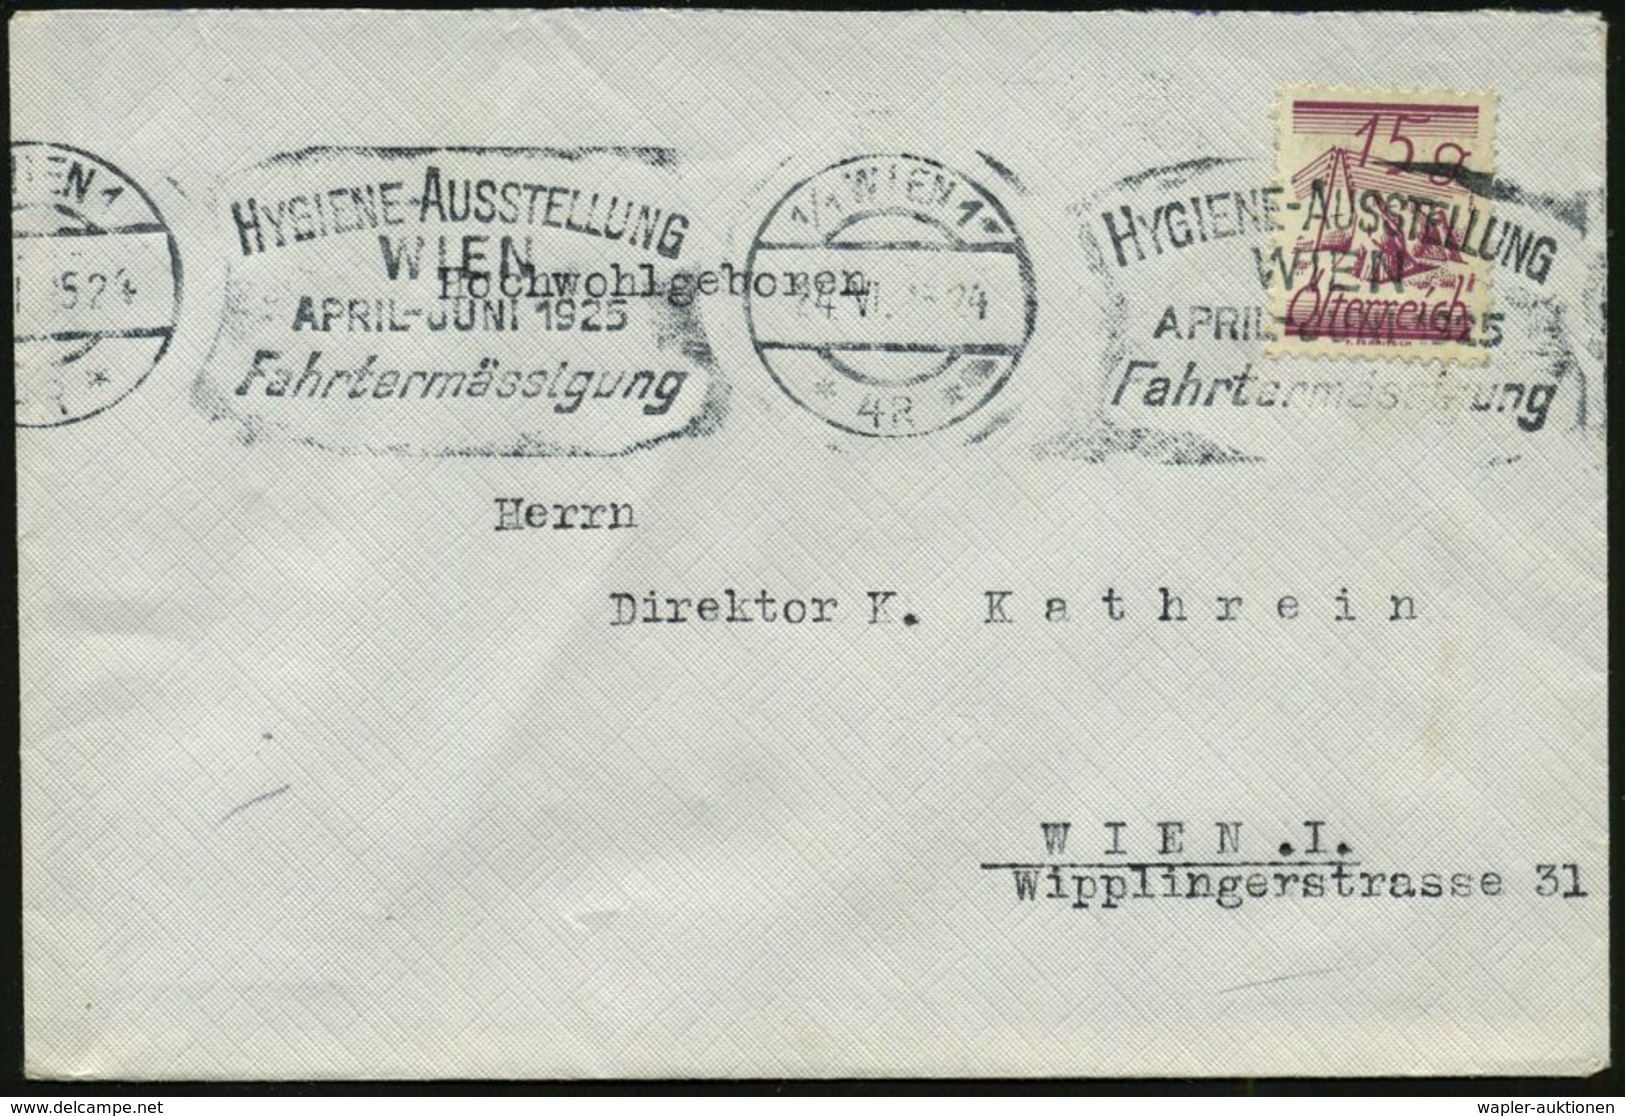 HYGIENE / KÖRPERPFLEGE : ÖSTERREICH 1924 BdMWSt: 1-1 WIEN 1/*4R*/HYGIENE-AUSSTELLUNG/WIEN.. (wie Immer Teils Gering Unde - Pharmacie